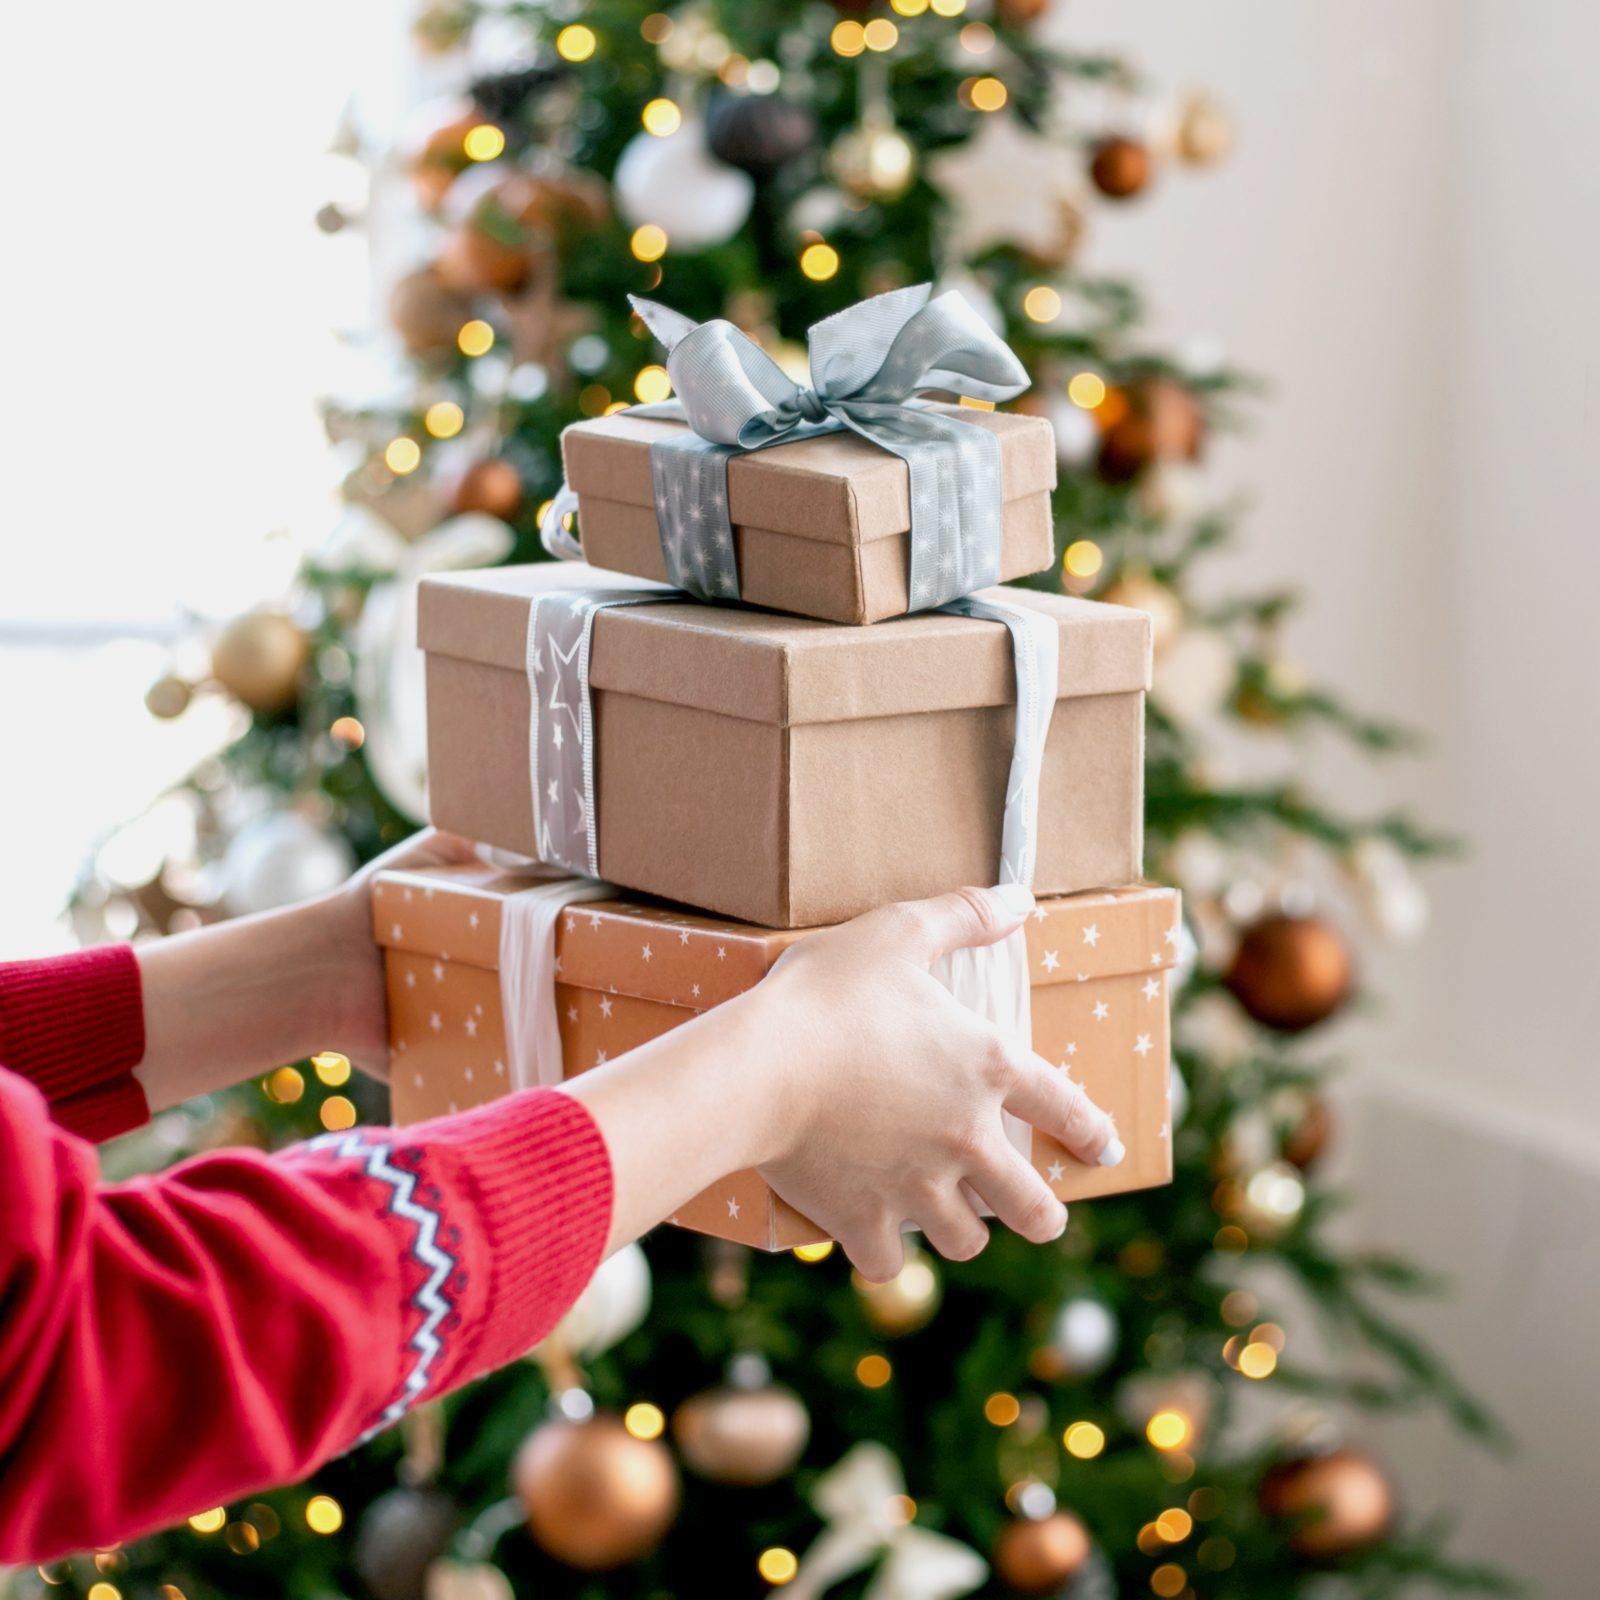 100 Best Cheap Gift Ideas for Christmas Under $25 - Bless'er House